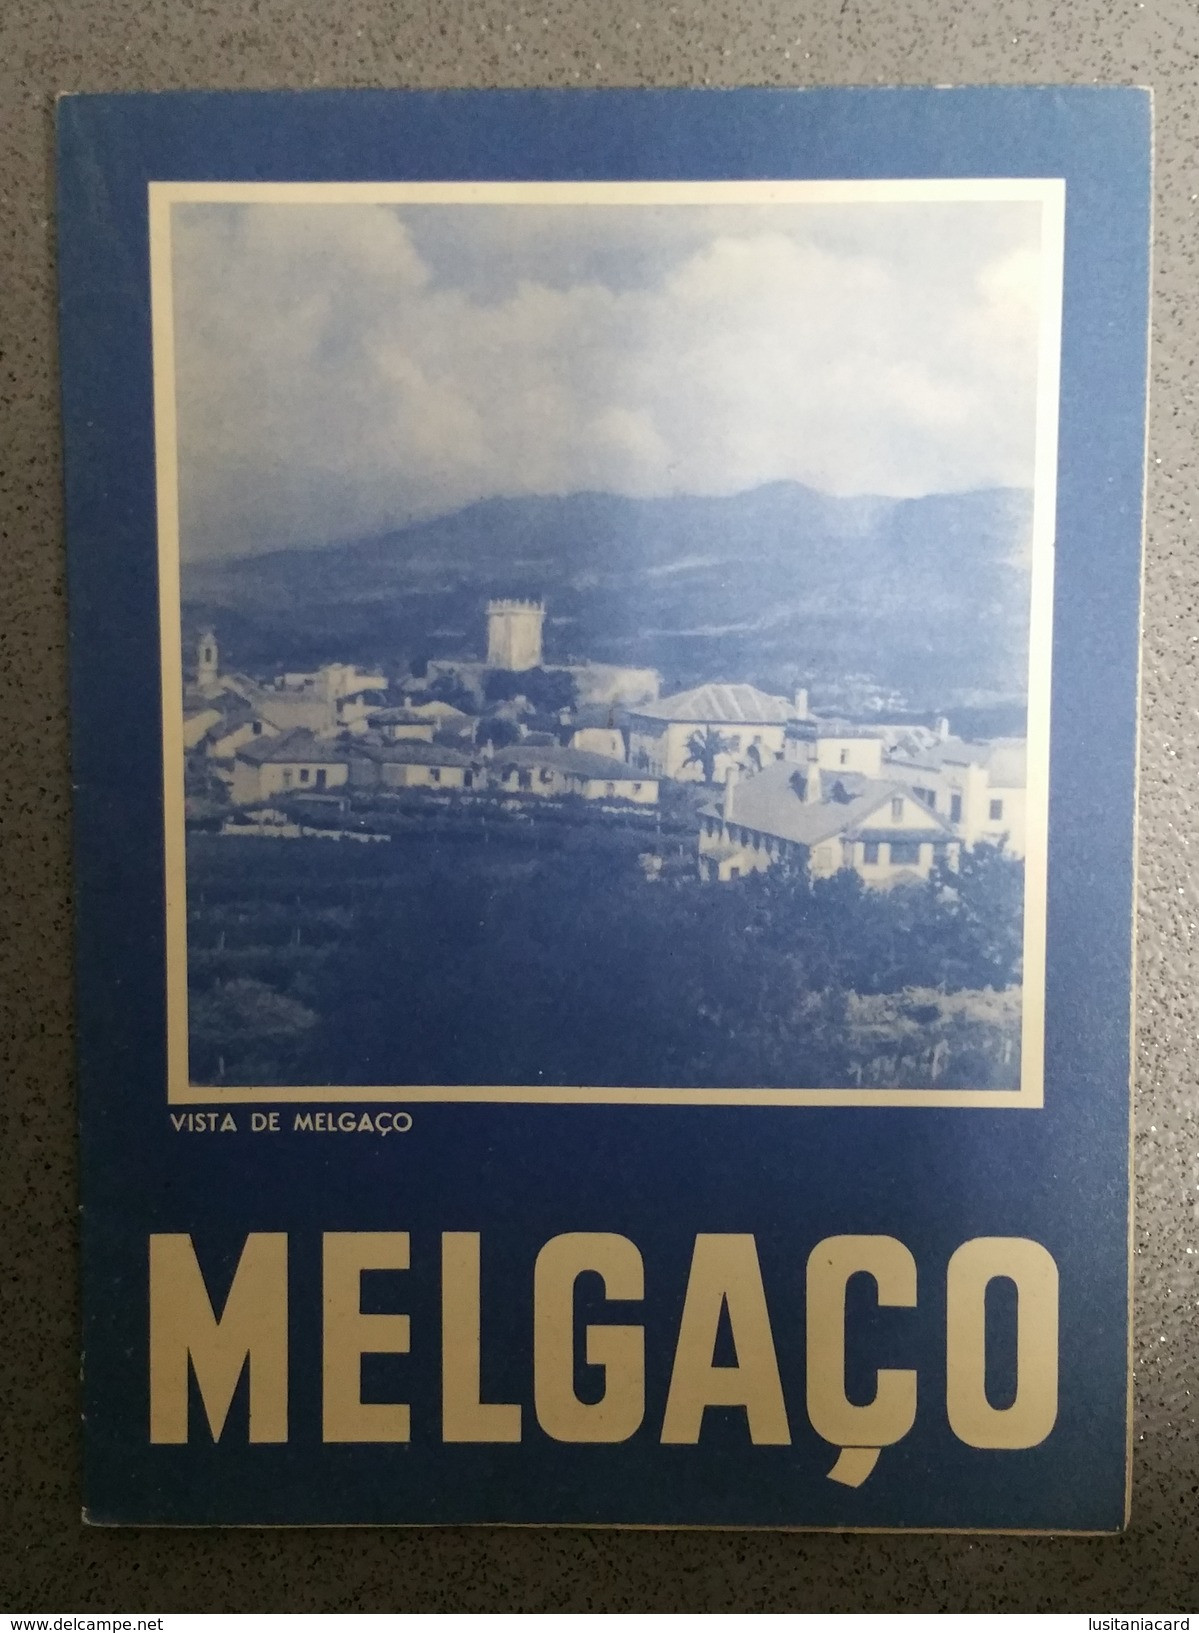 MELGAÇO - ROTEIRO TURISTICO - «Vista De Melgaço» (Ed. ROTEP Nº 224  - 1955 ) - Livres Anciens